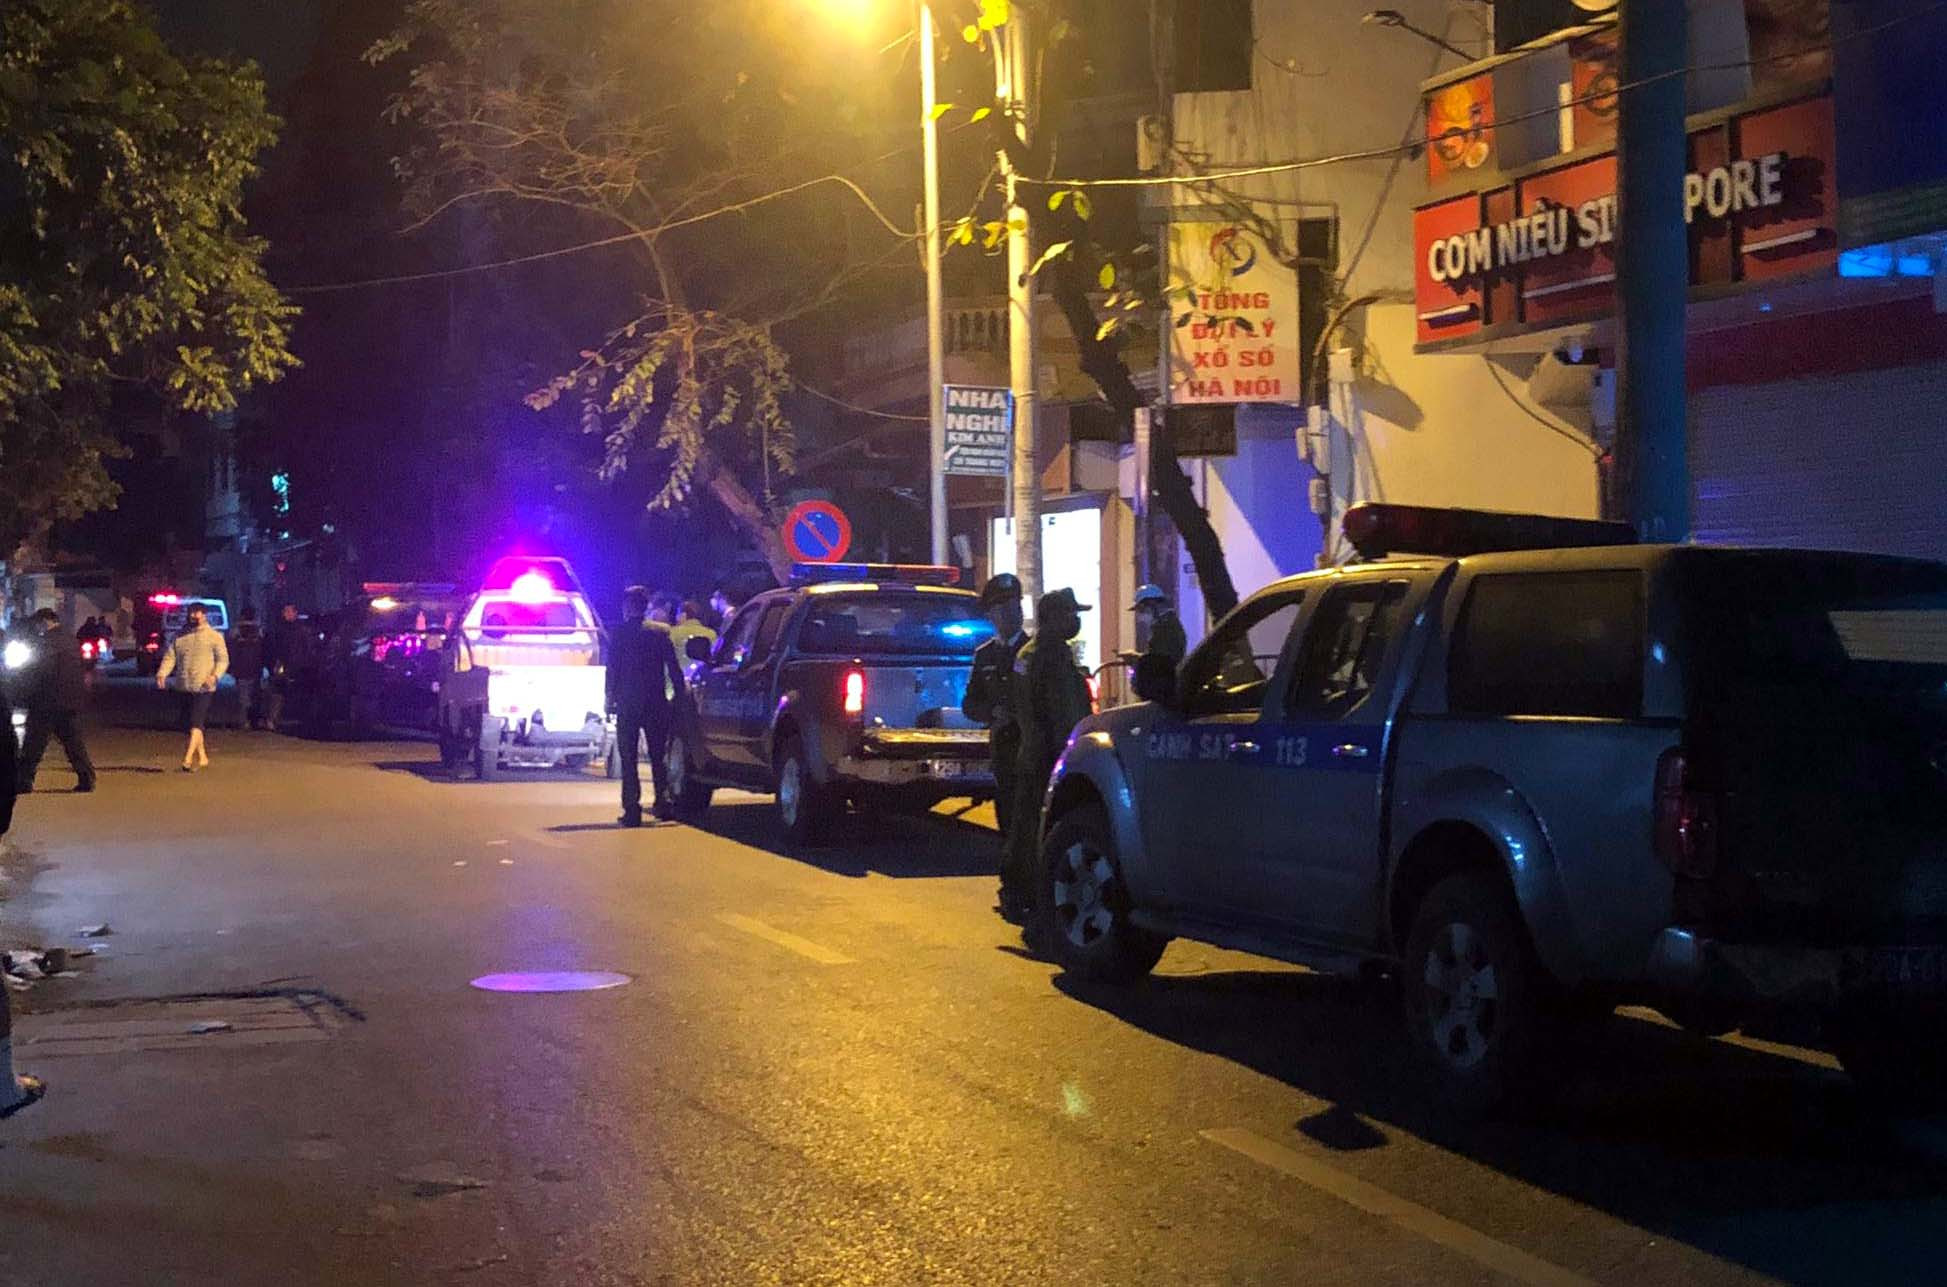 Danh tính nghi phạm đâm chết người yêu cũ trong đêm ở Hà Nội